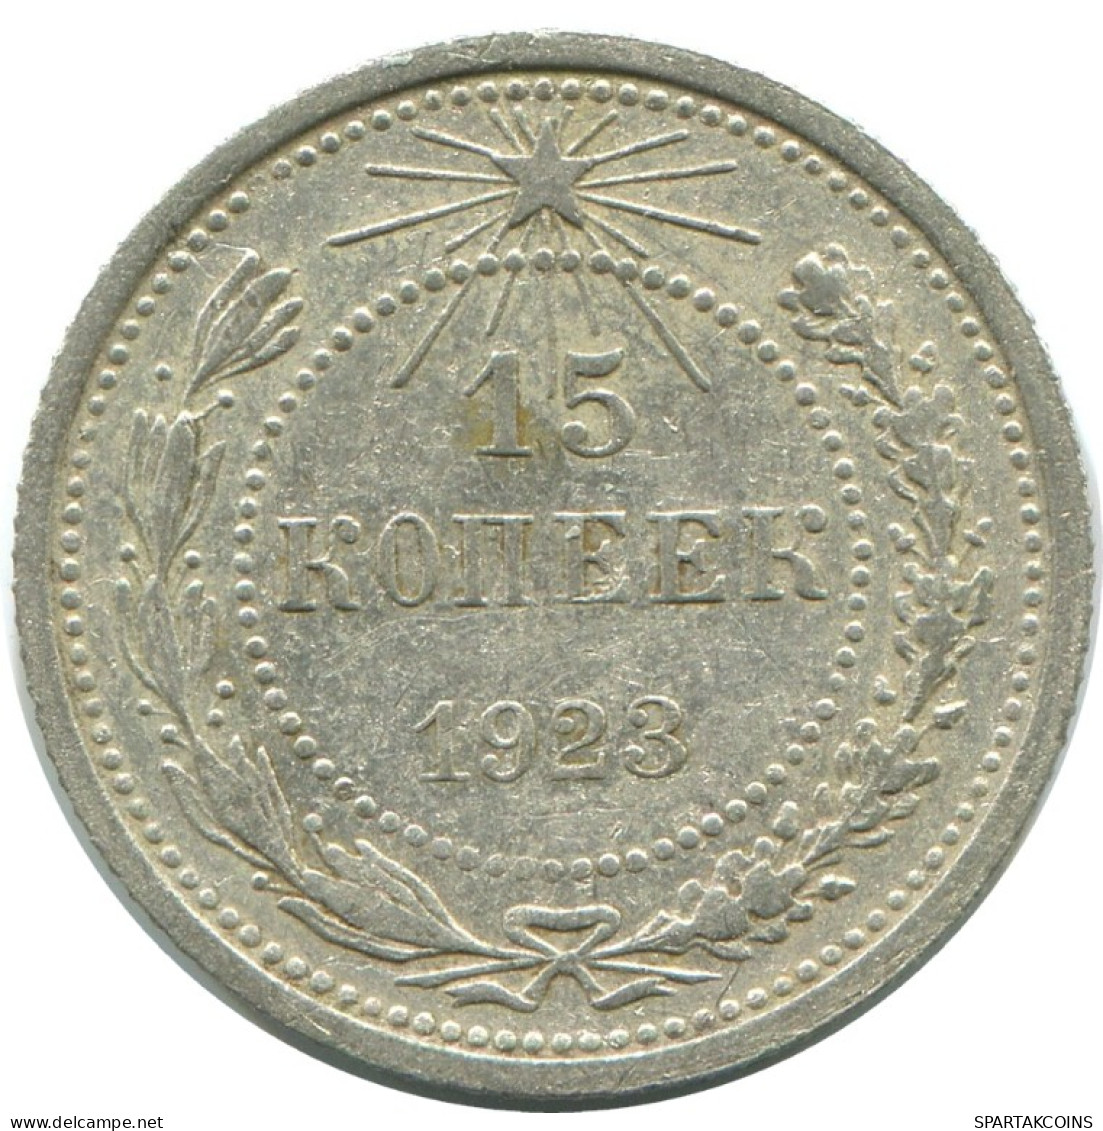 15 KOPEKS 1923 RUSSLAND RUSSIA RSFSR SILBER Münze HIGH GRADE #AF120.4.D.A - Russia